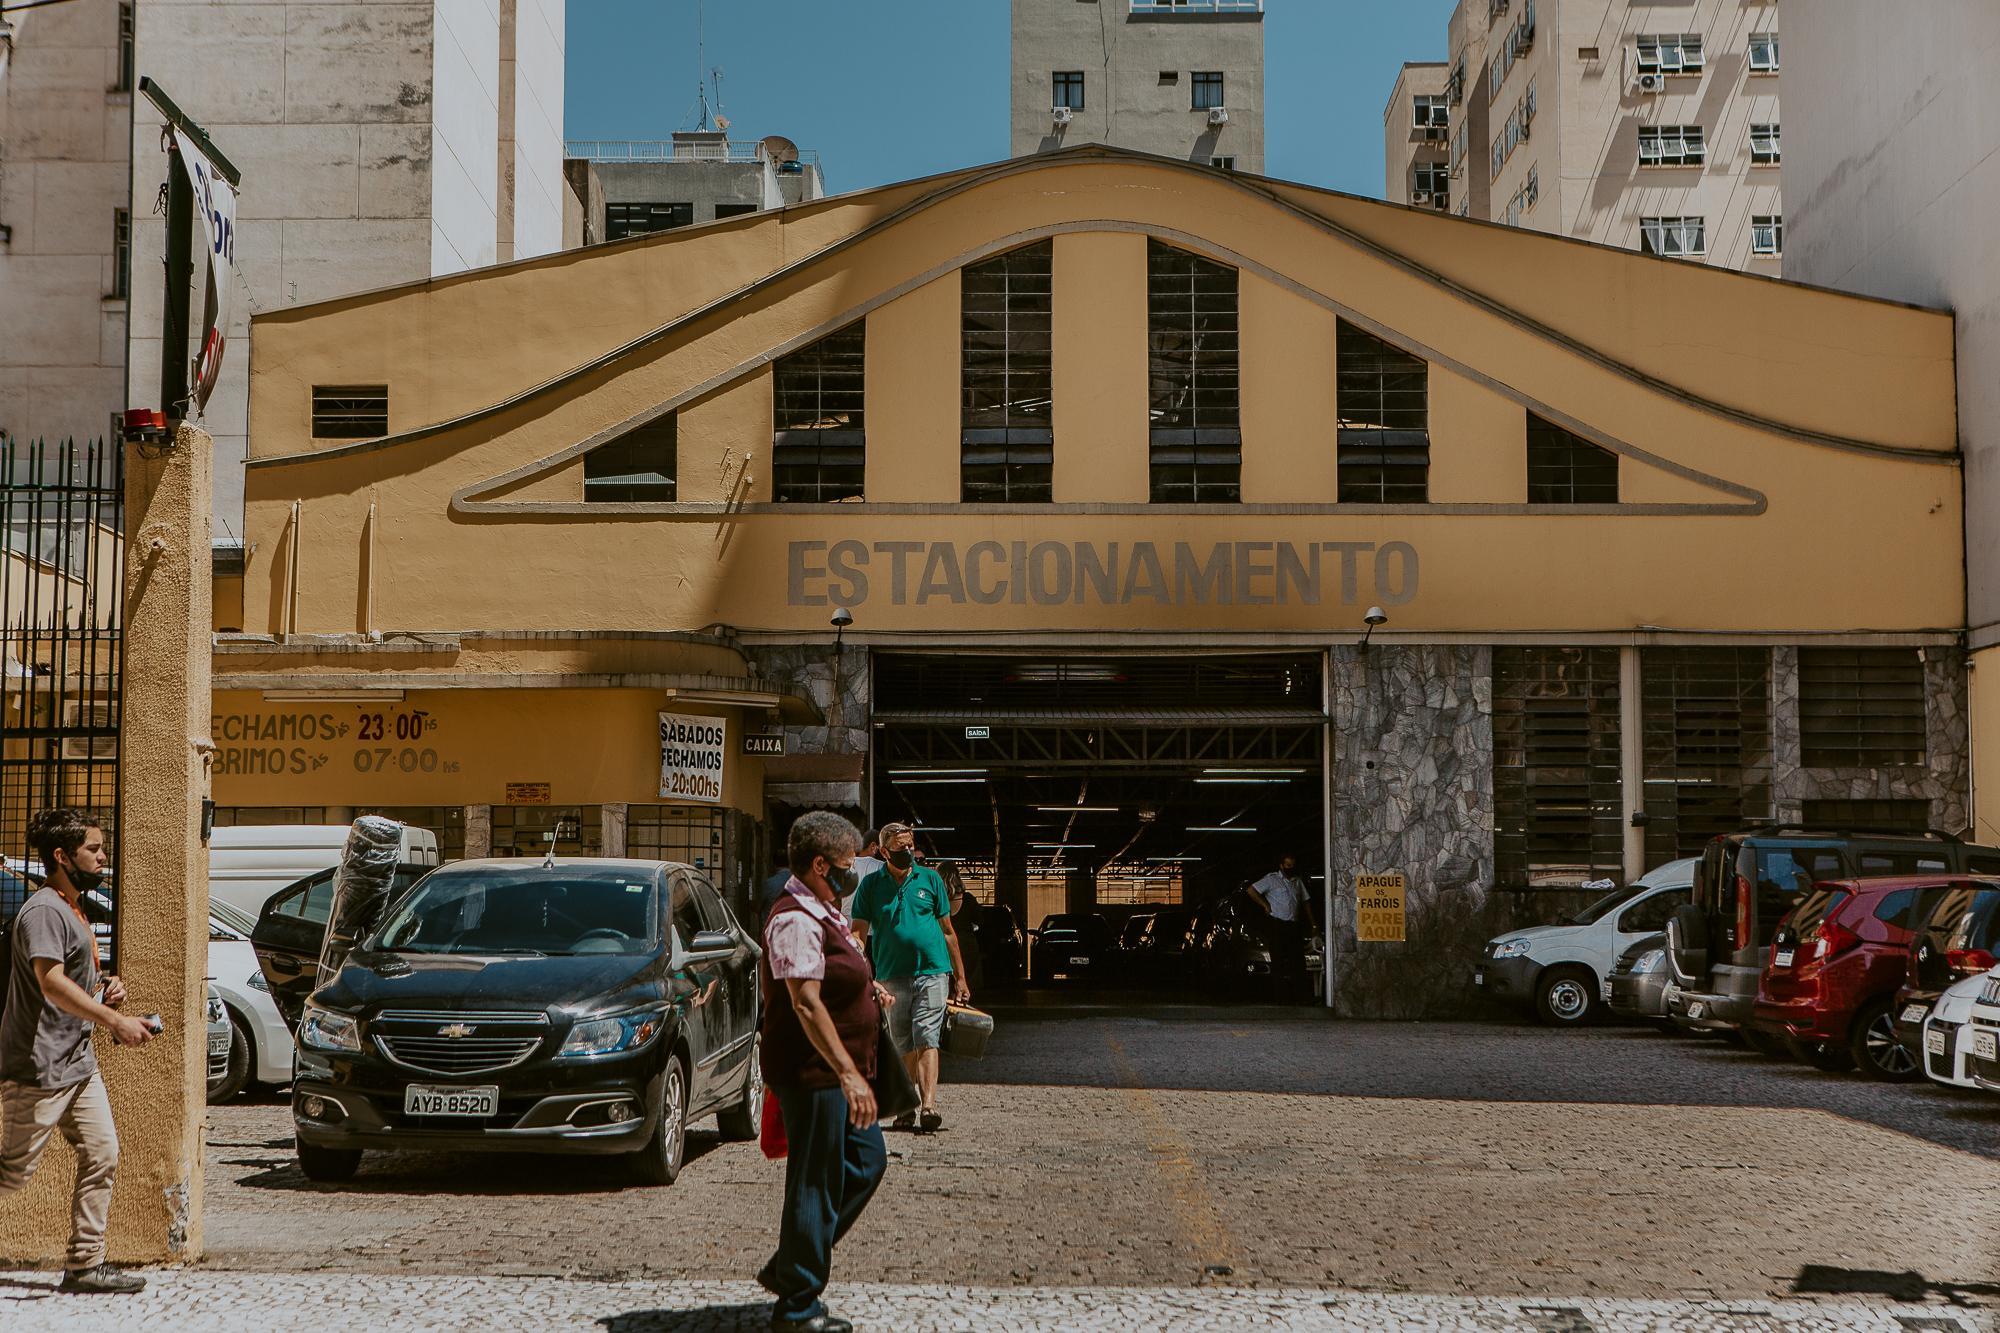 Estacionamentos de Curitiba podem receber aval para diversificar atividades